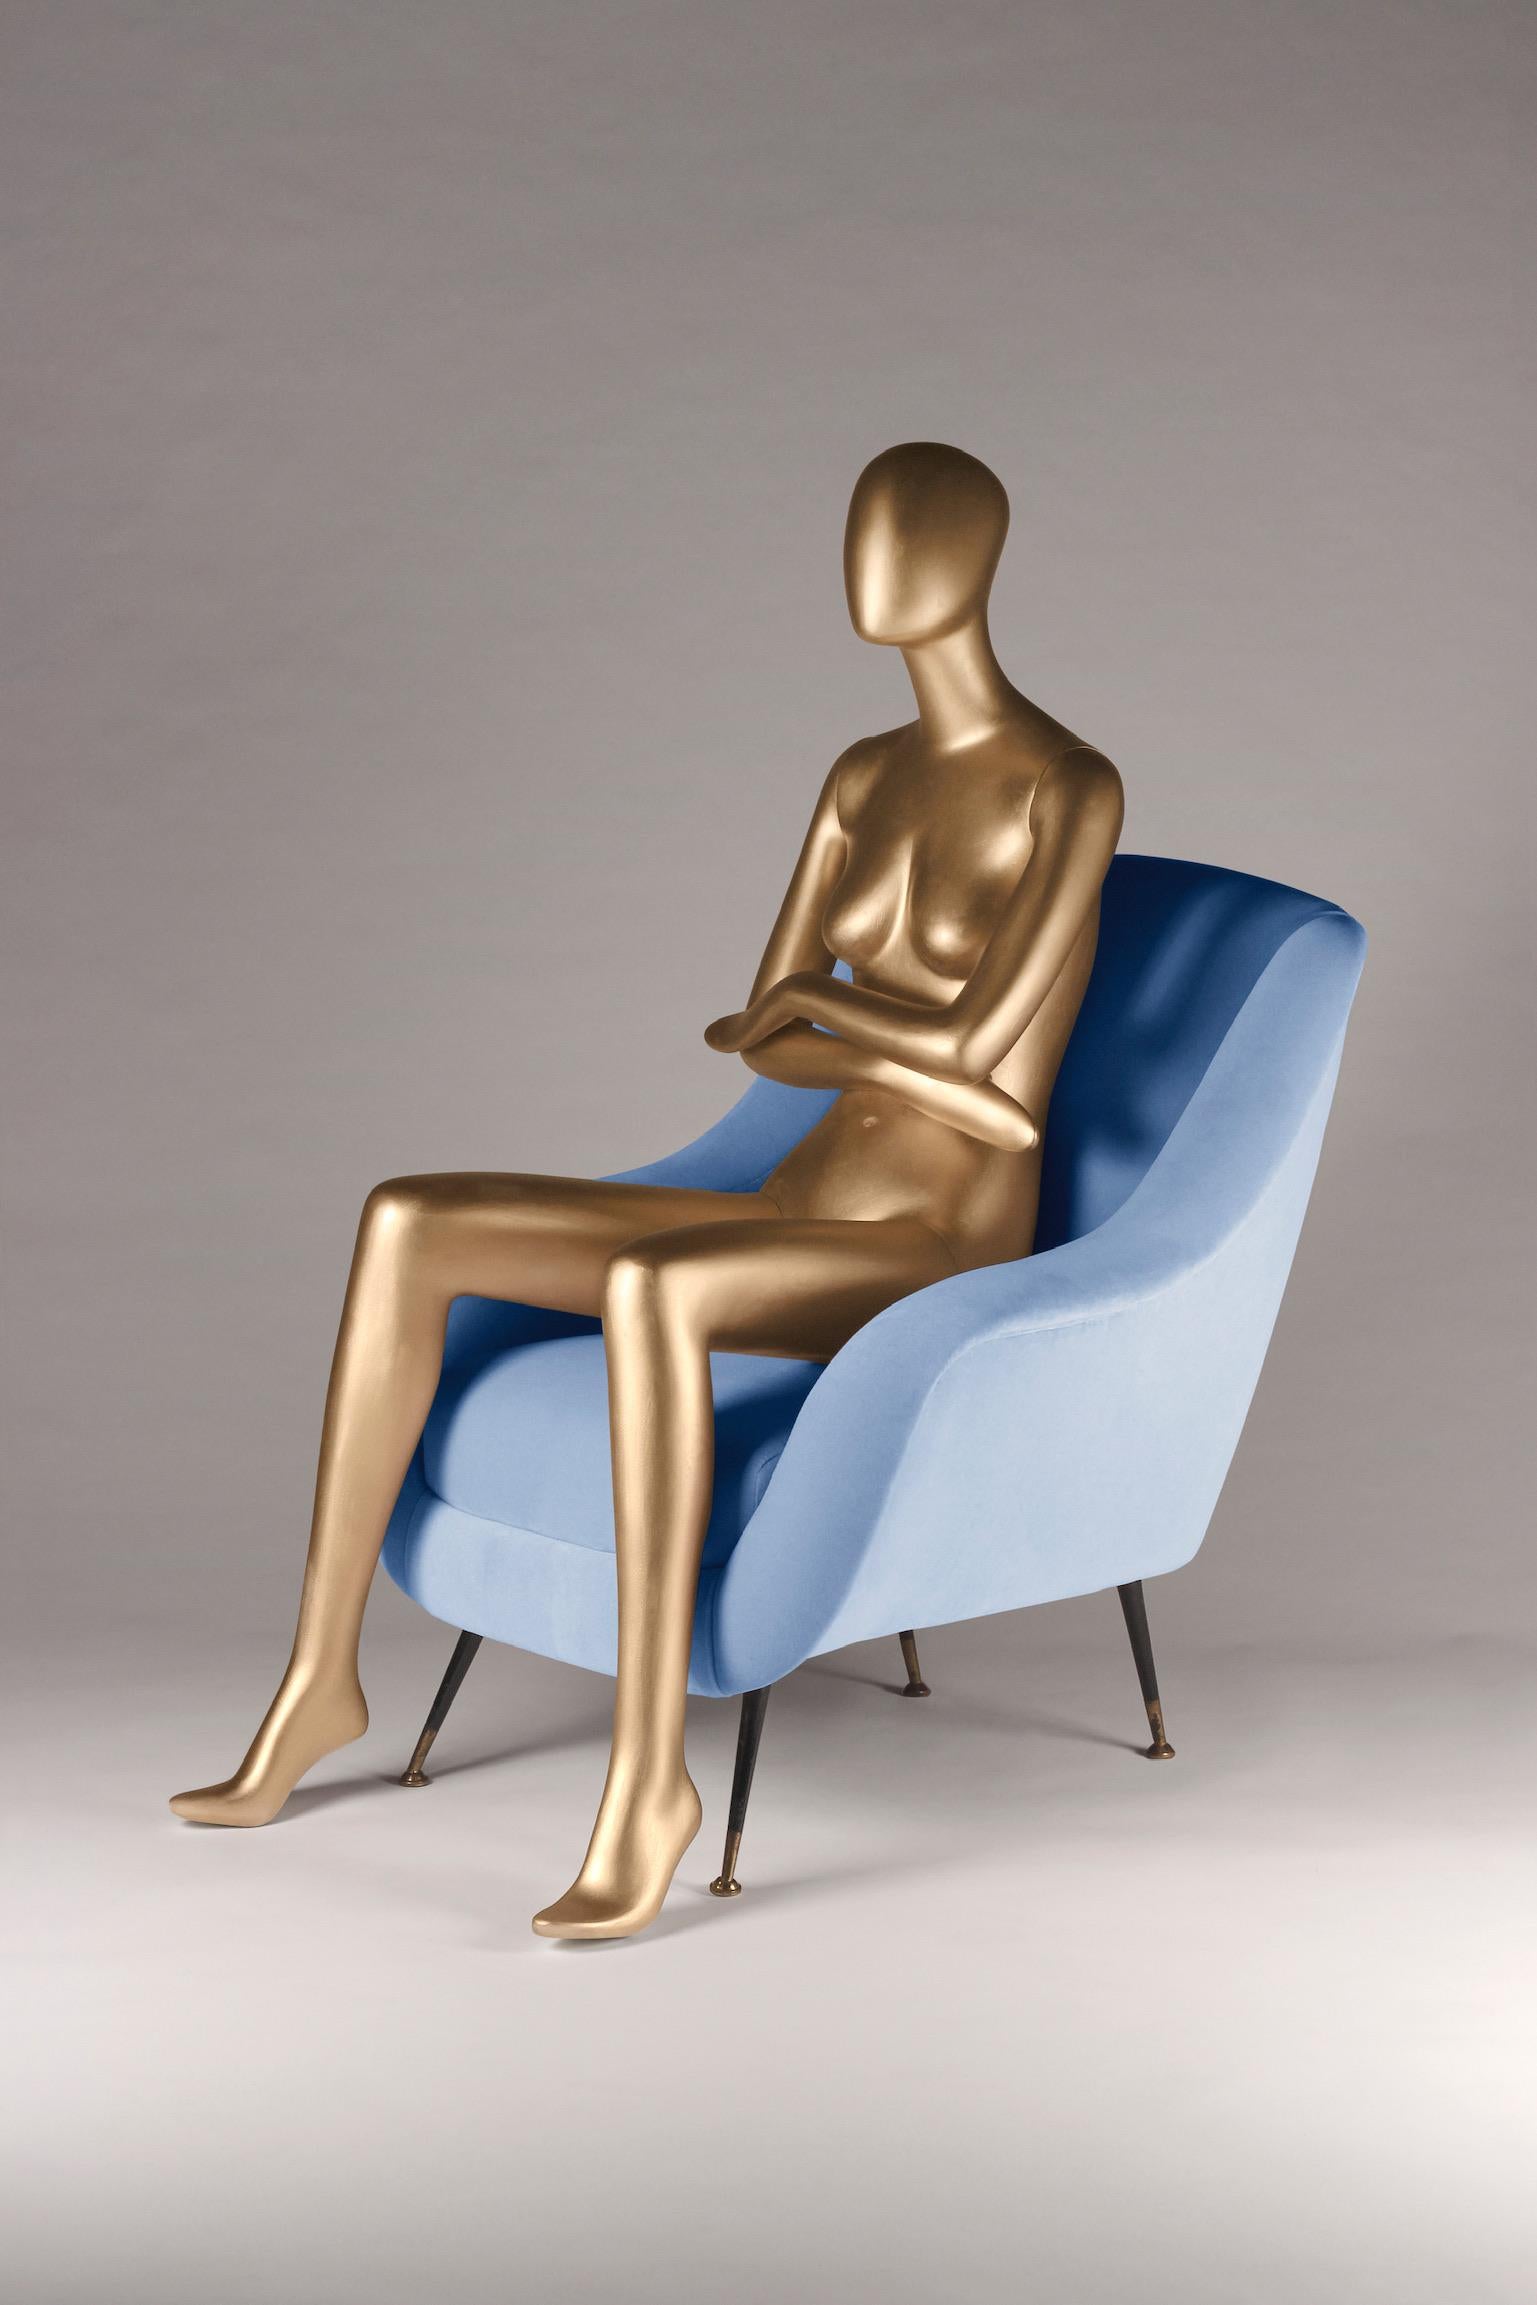 Sophia s'est inspirée du design italien des années 50 et a été créée par des artisans anglais pour le 21ème siècle. Nous avons mis au point une chaise longue avec la possibilité d'en produire n'importe quel nombre selon vos spécifications de tissu.